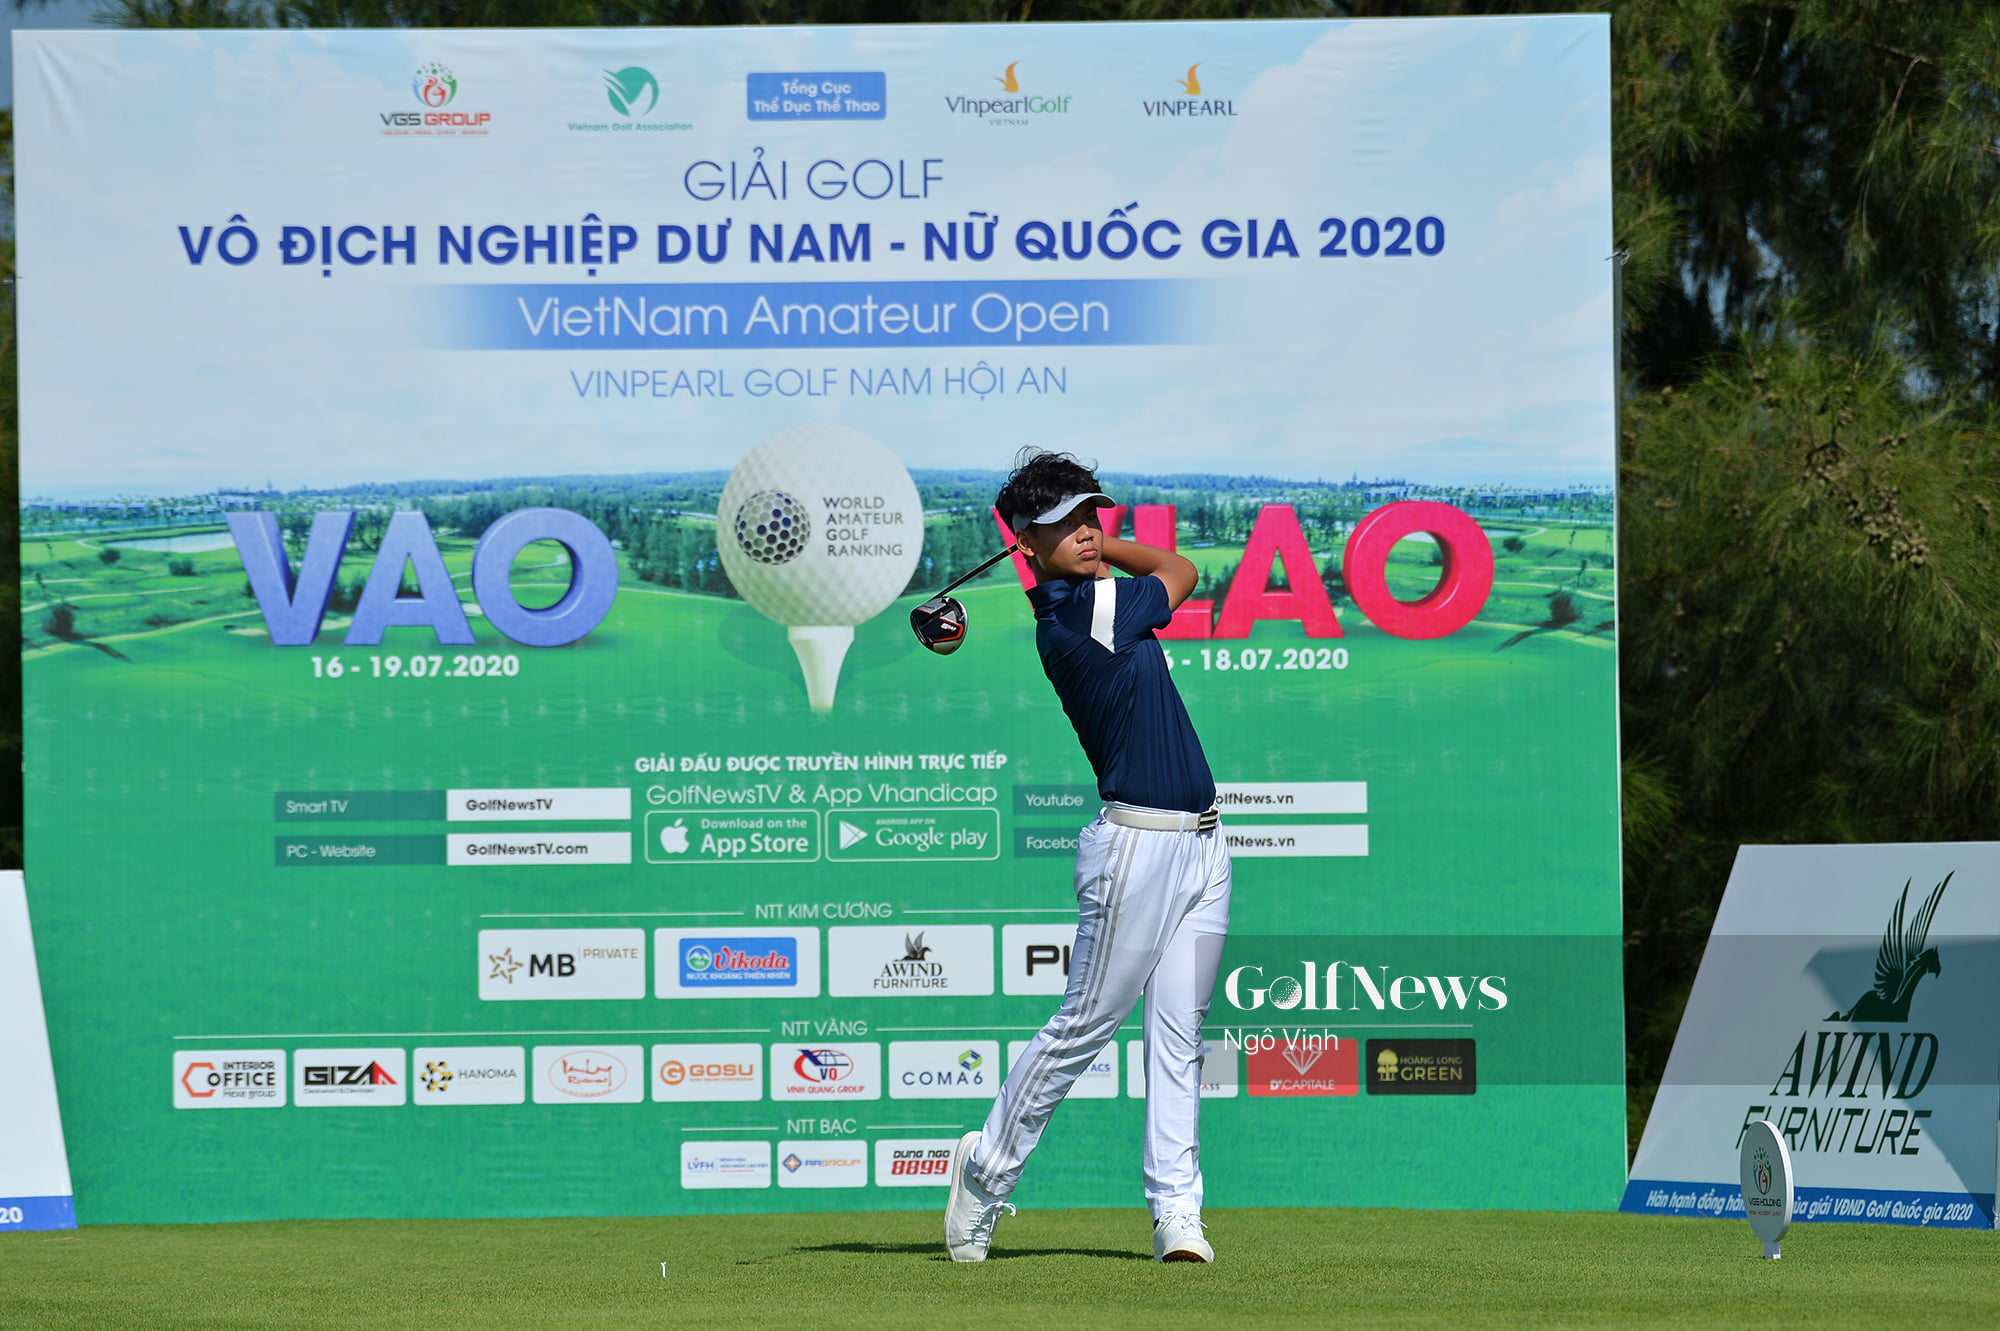 Hiệp hội golf Việt Nam hủy toàn bộ các giải đấu Vô địch nghiệp dư Quốc gia còn lại trong năm